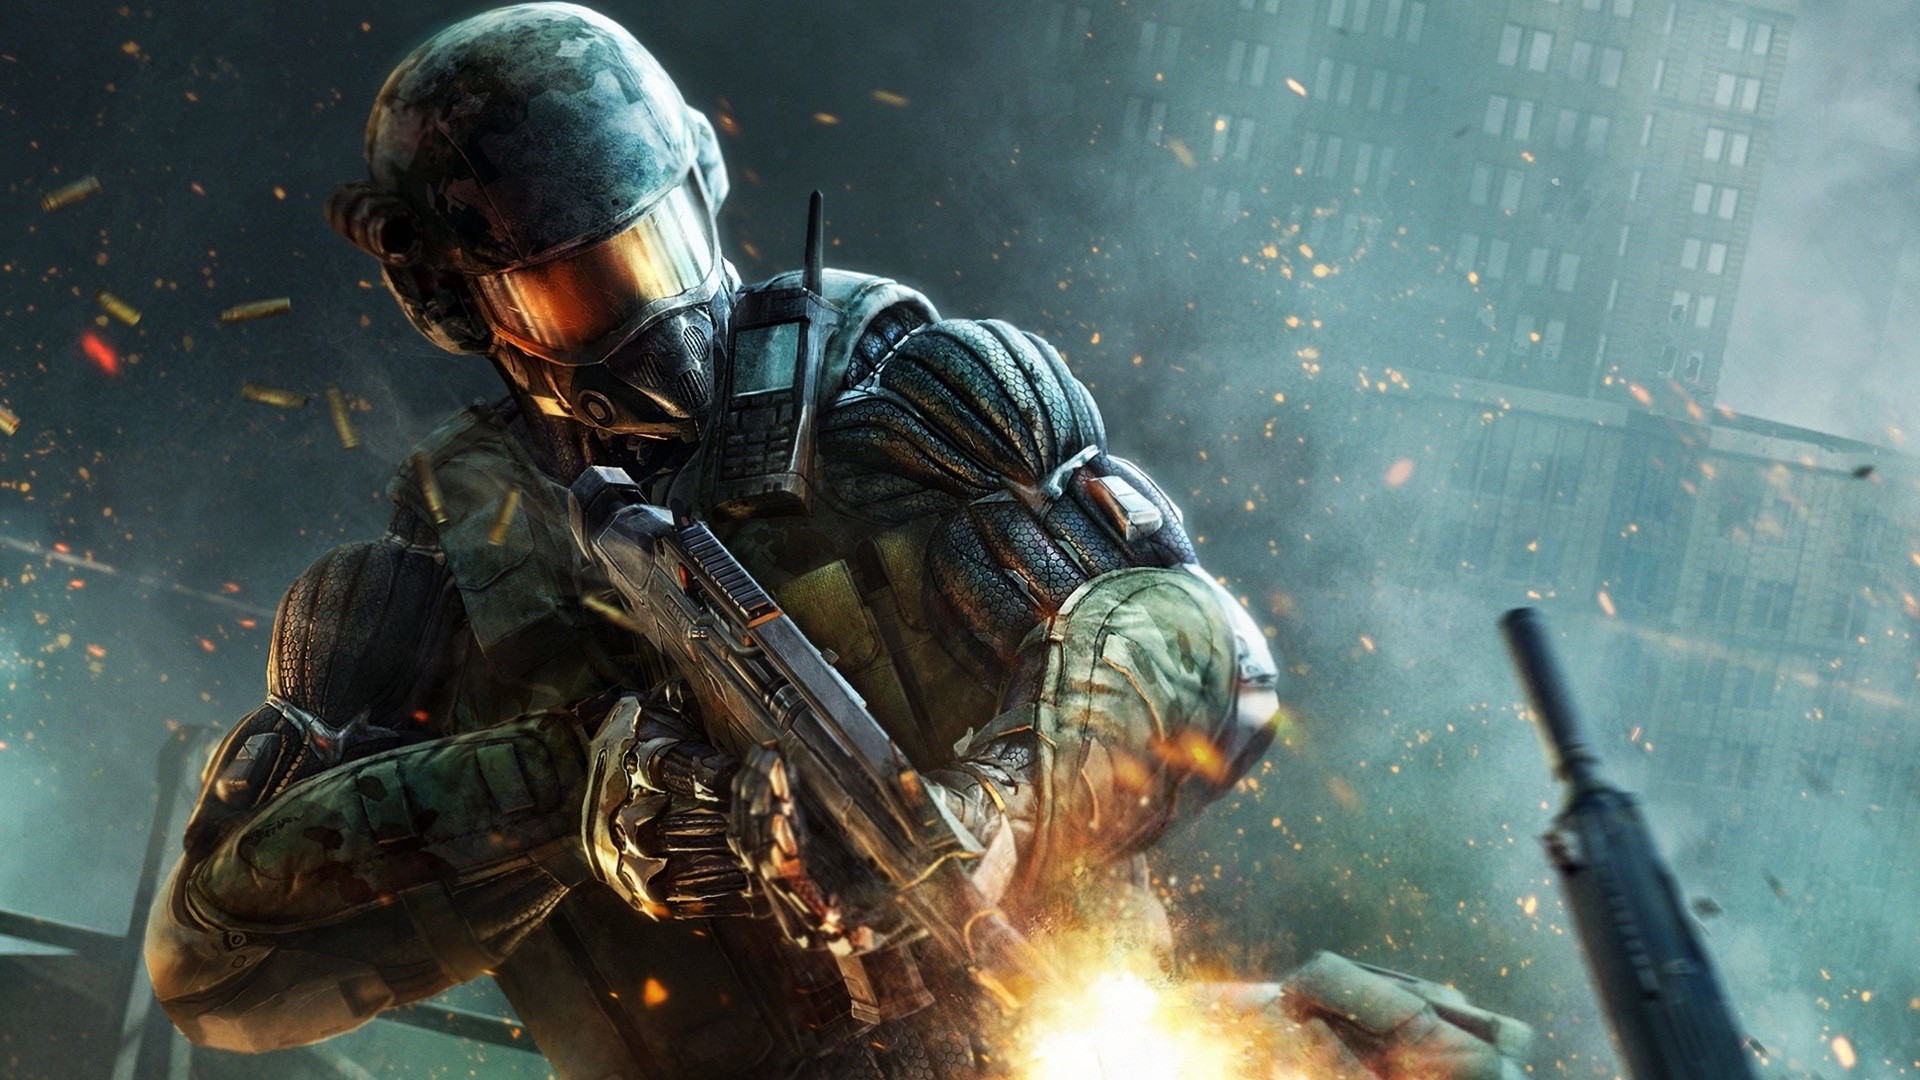 gun-video-games-soldier-Crysis